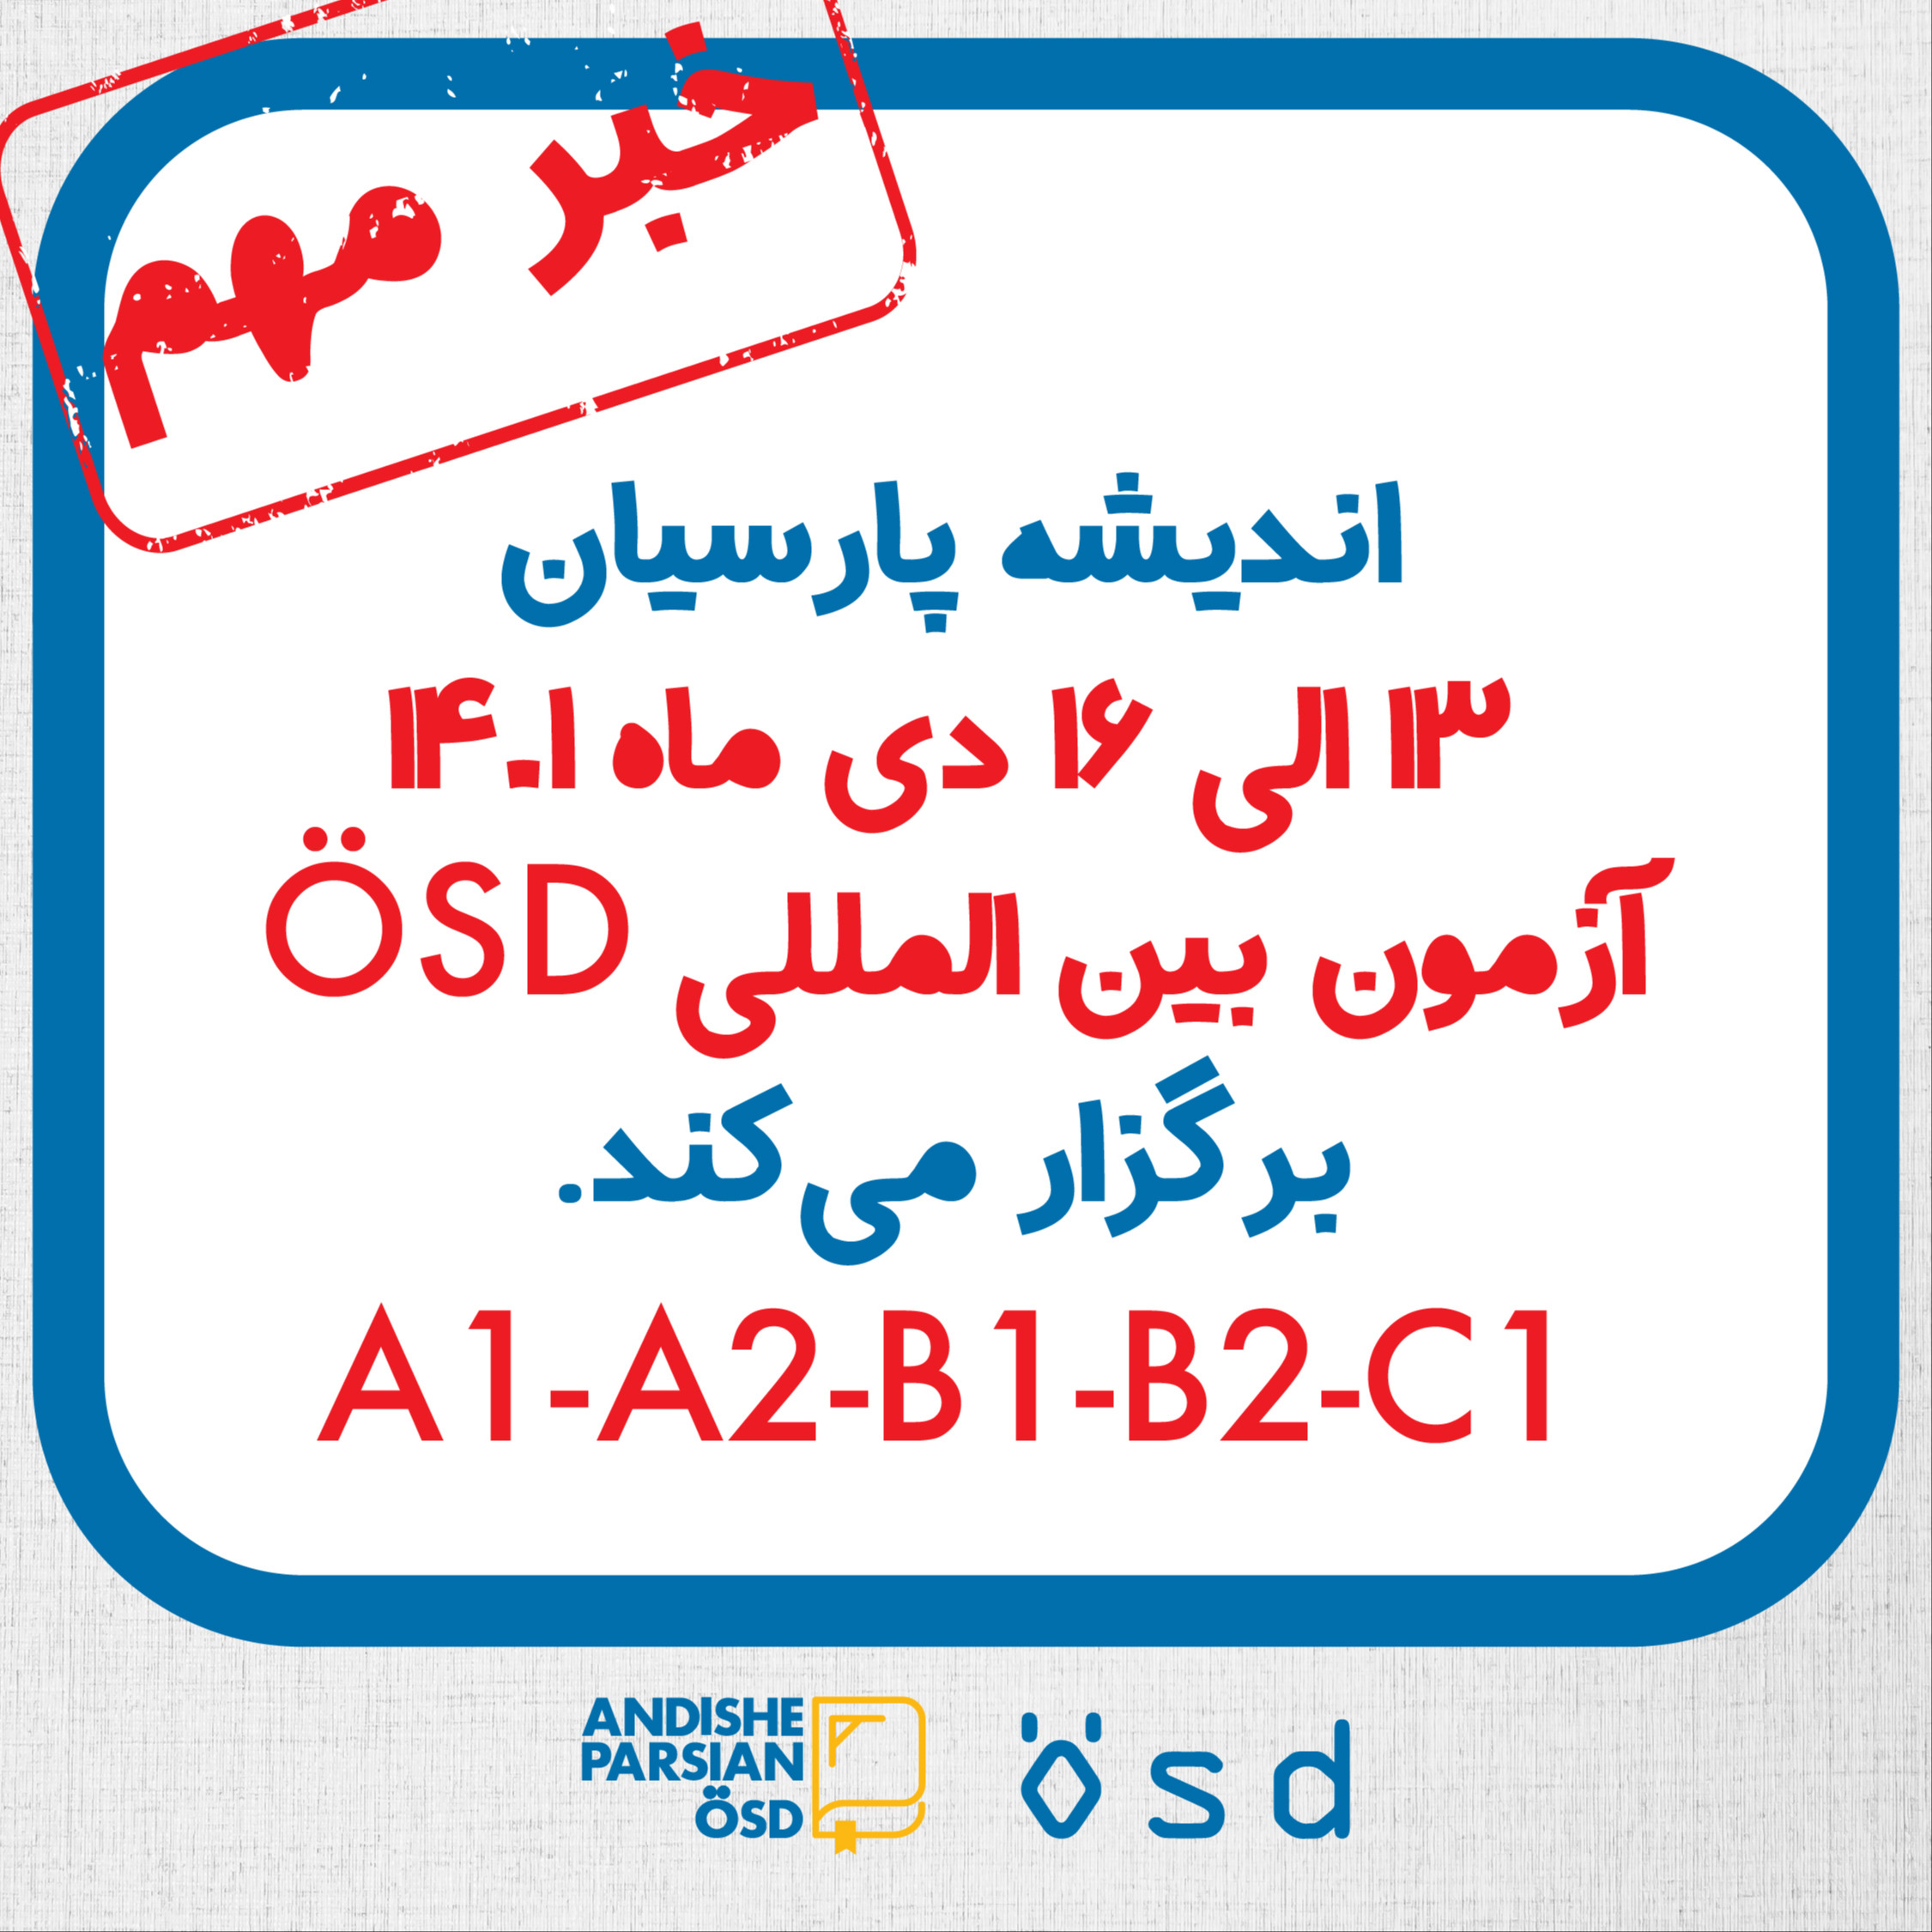 برگزاری آزمون ÖSD در دی ماه ۱۴۰۱ در اندیشه پارسیان